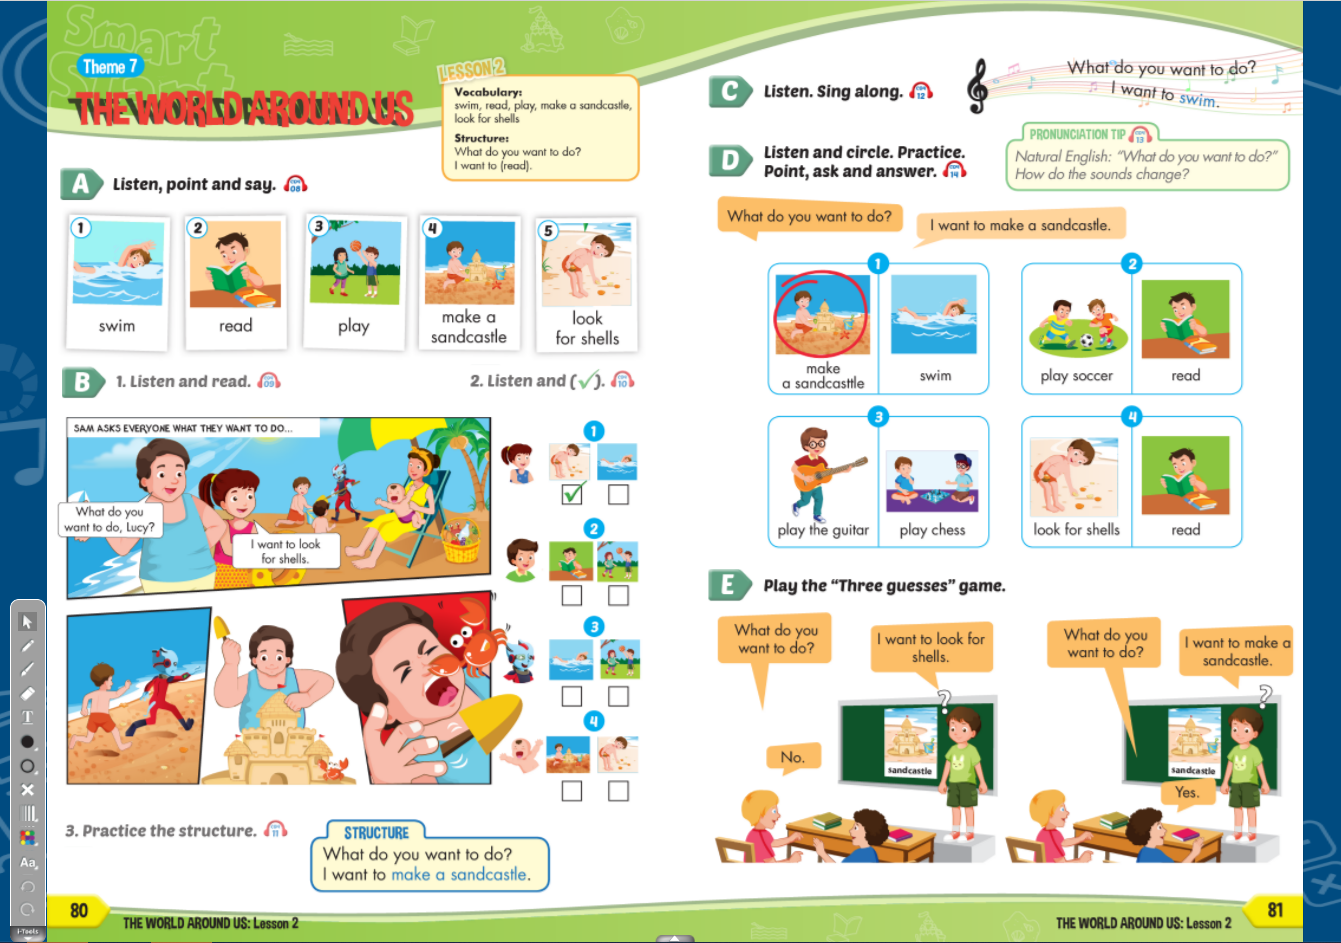 [APP] i-Learn Smart Start Grade 4 - Ứng dụng phần mềm tương tác sách học sinh